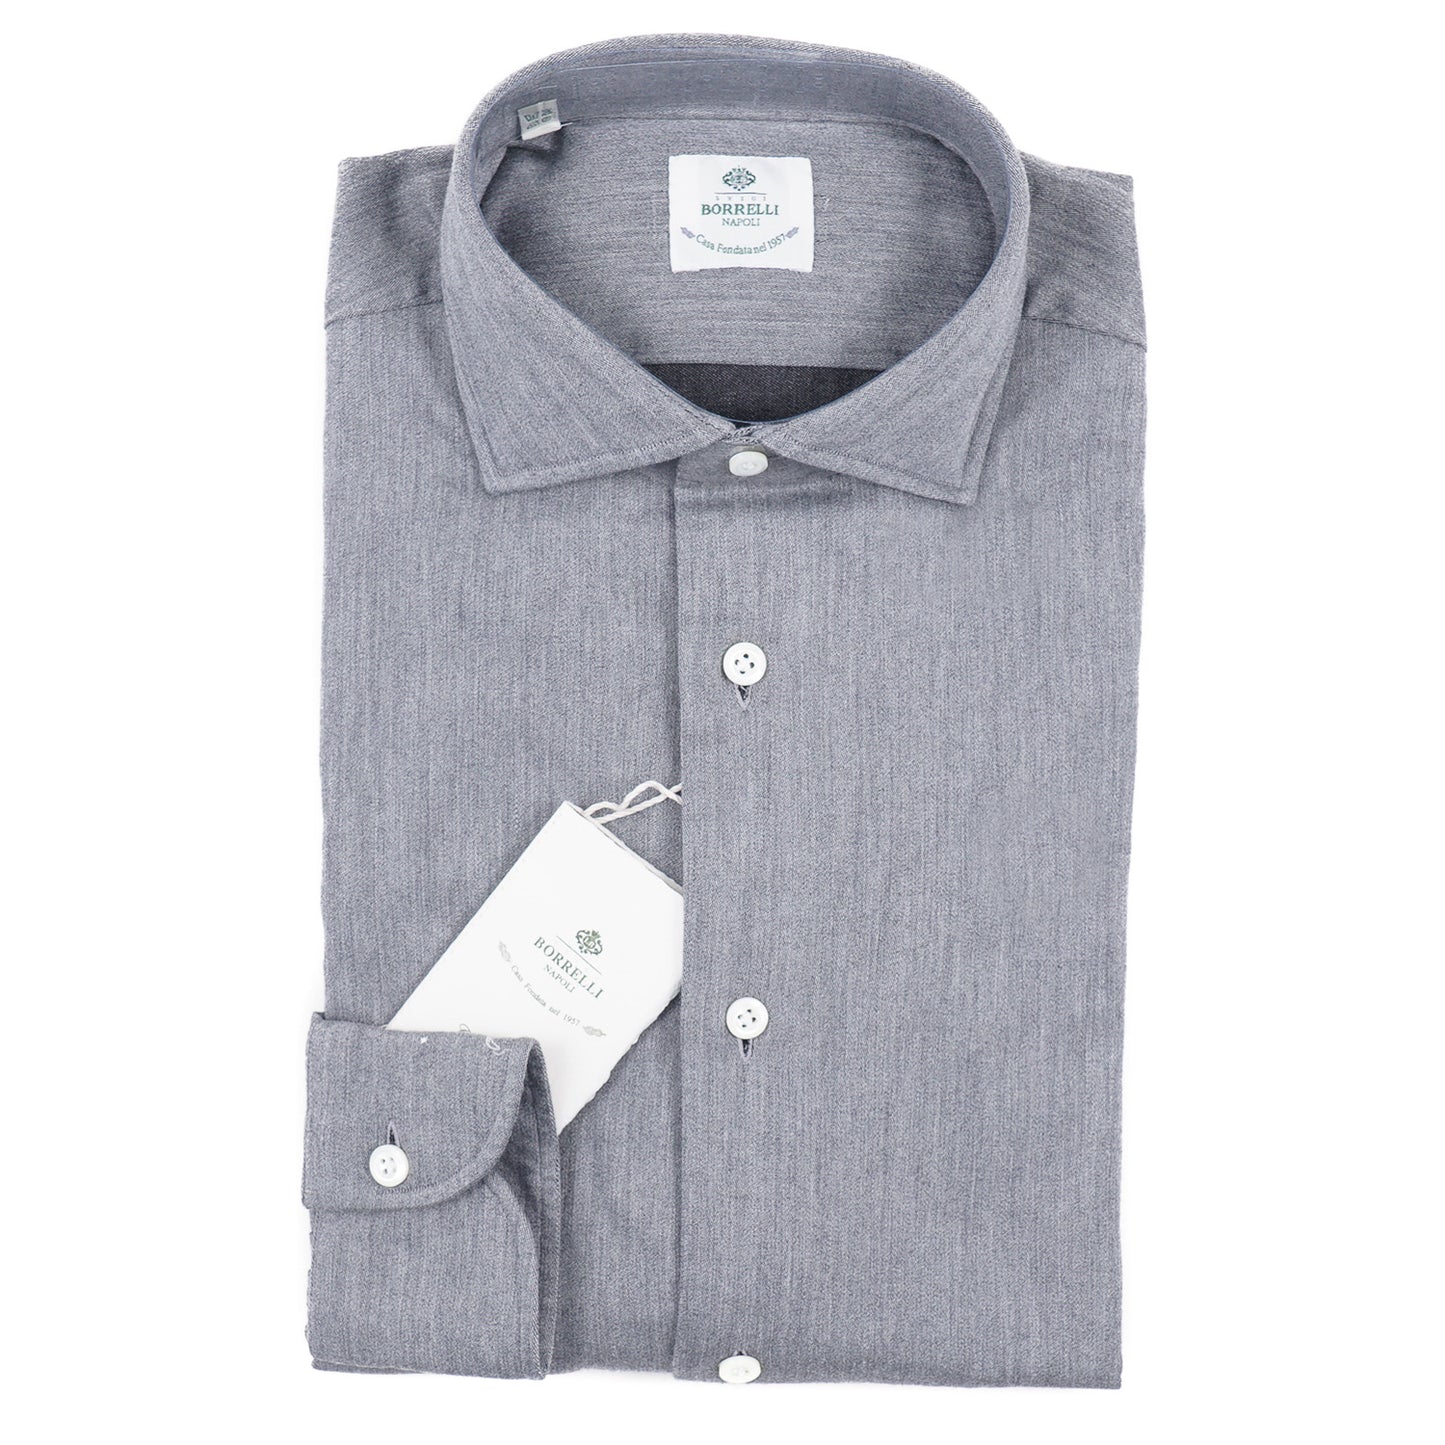 Luigi Borrelli Woven Gray Cotton Shirt - Top Shelf Apparel